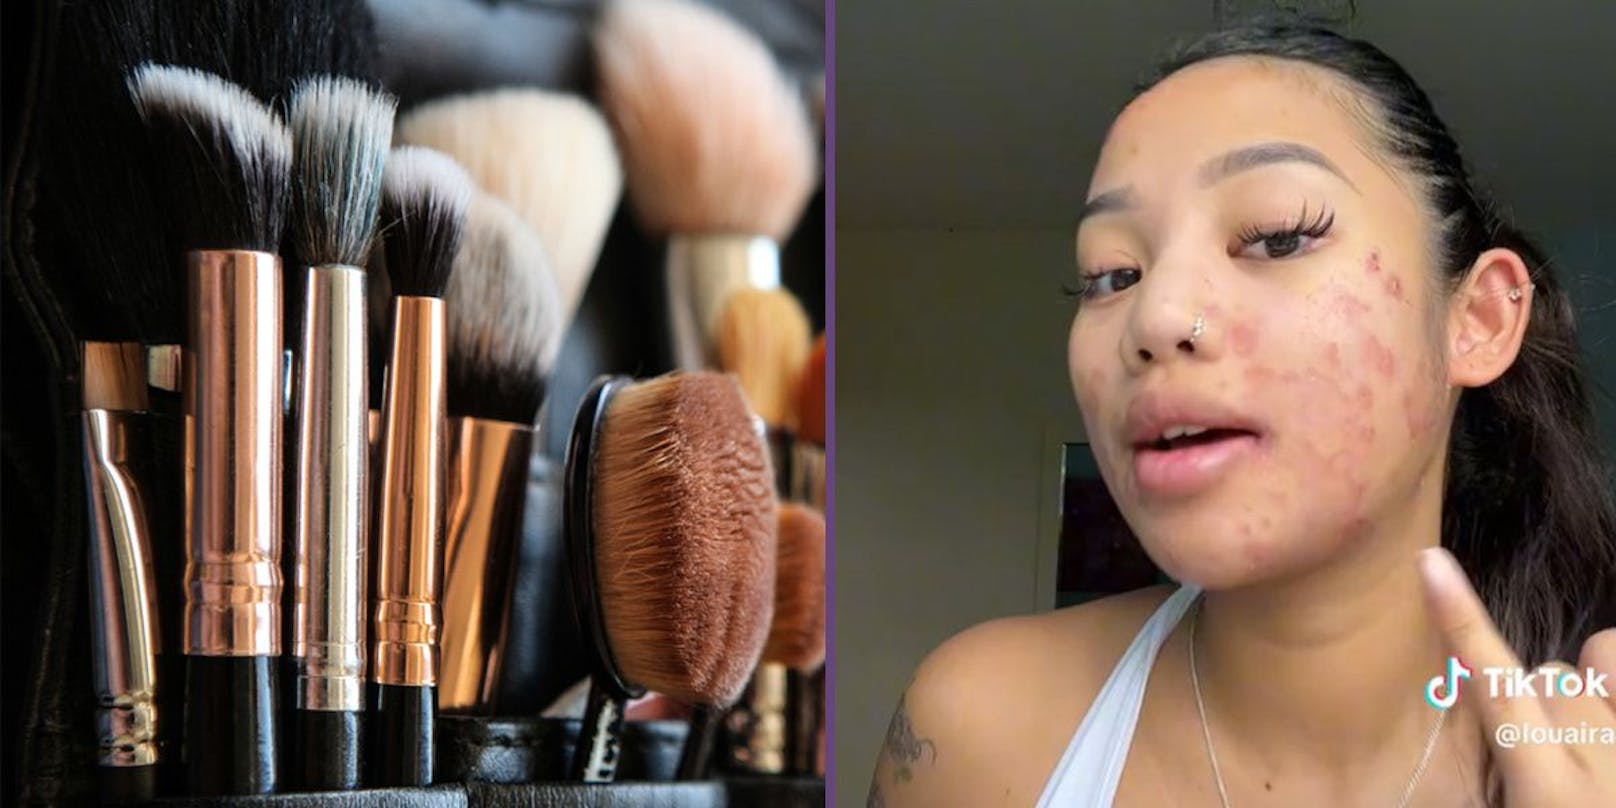 Frau reinigt Make-up-Pinsel nicht – hat Pilz im Gesicht